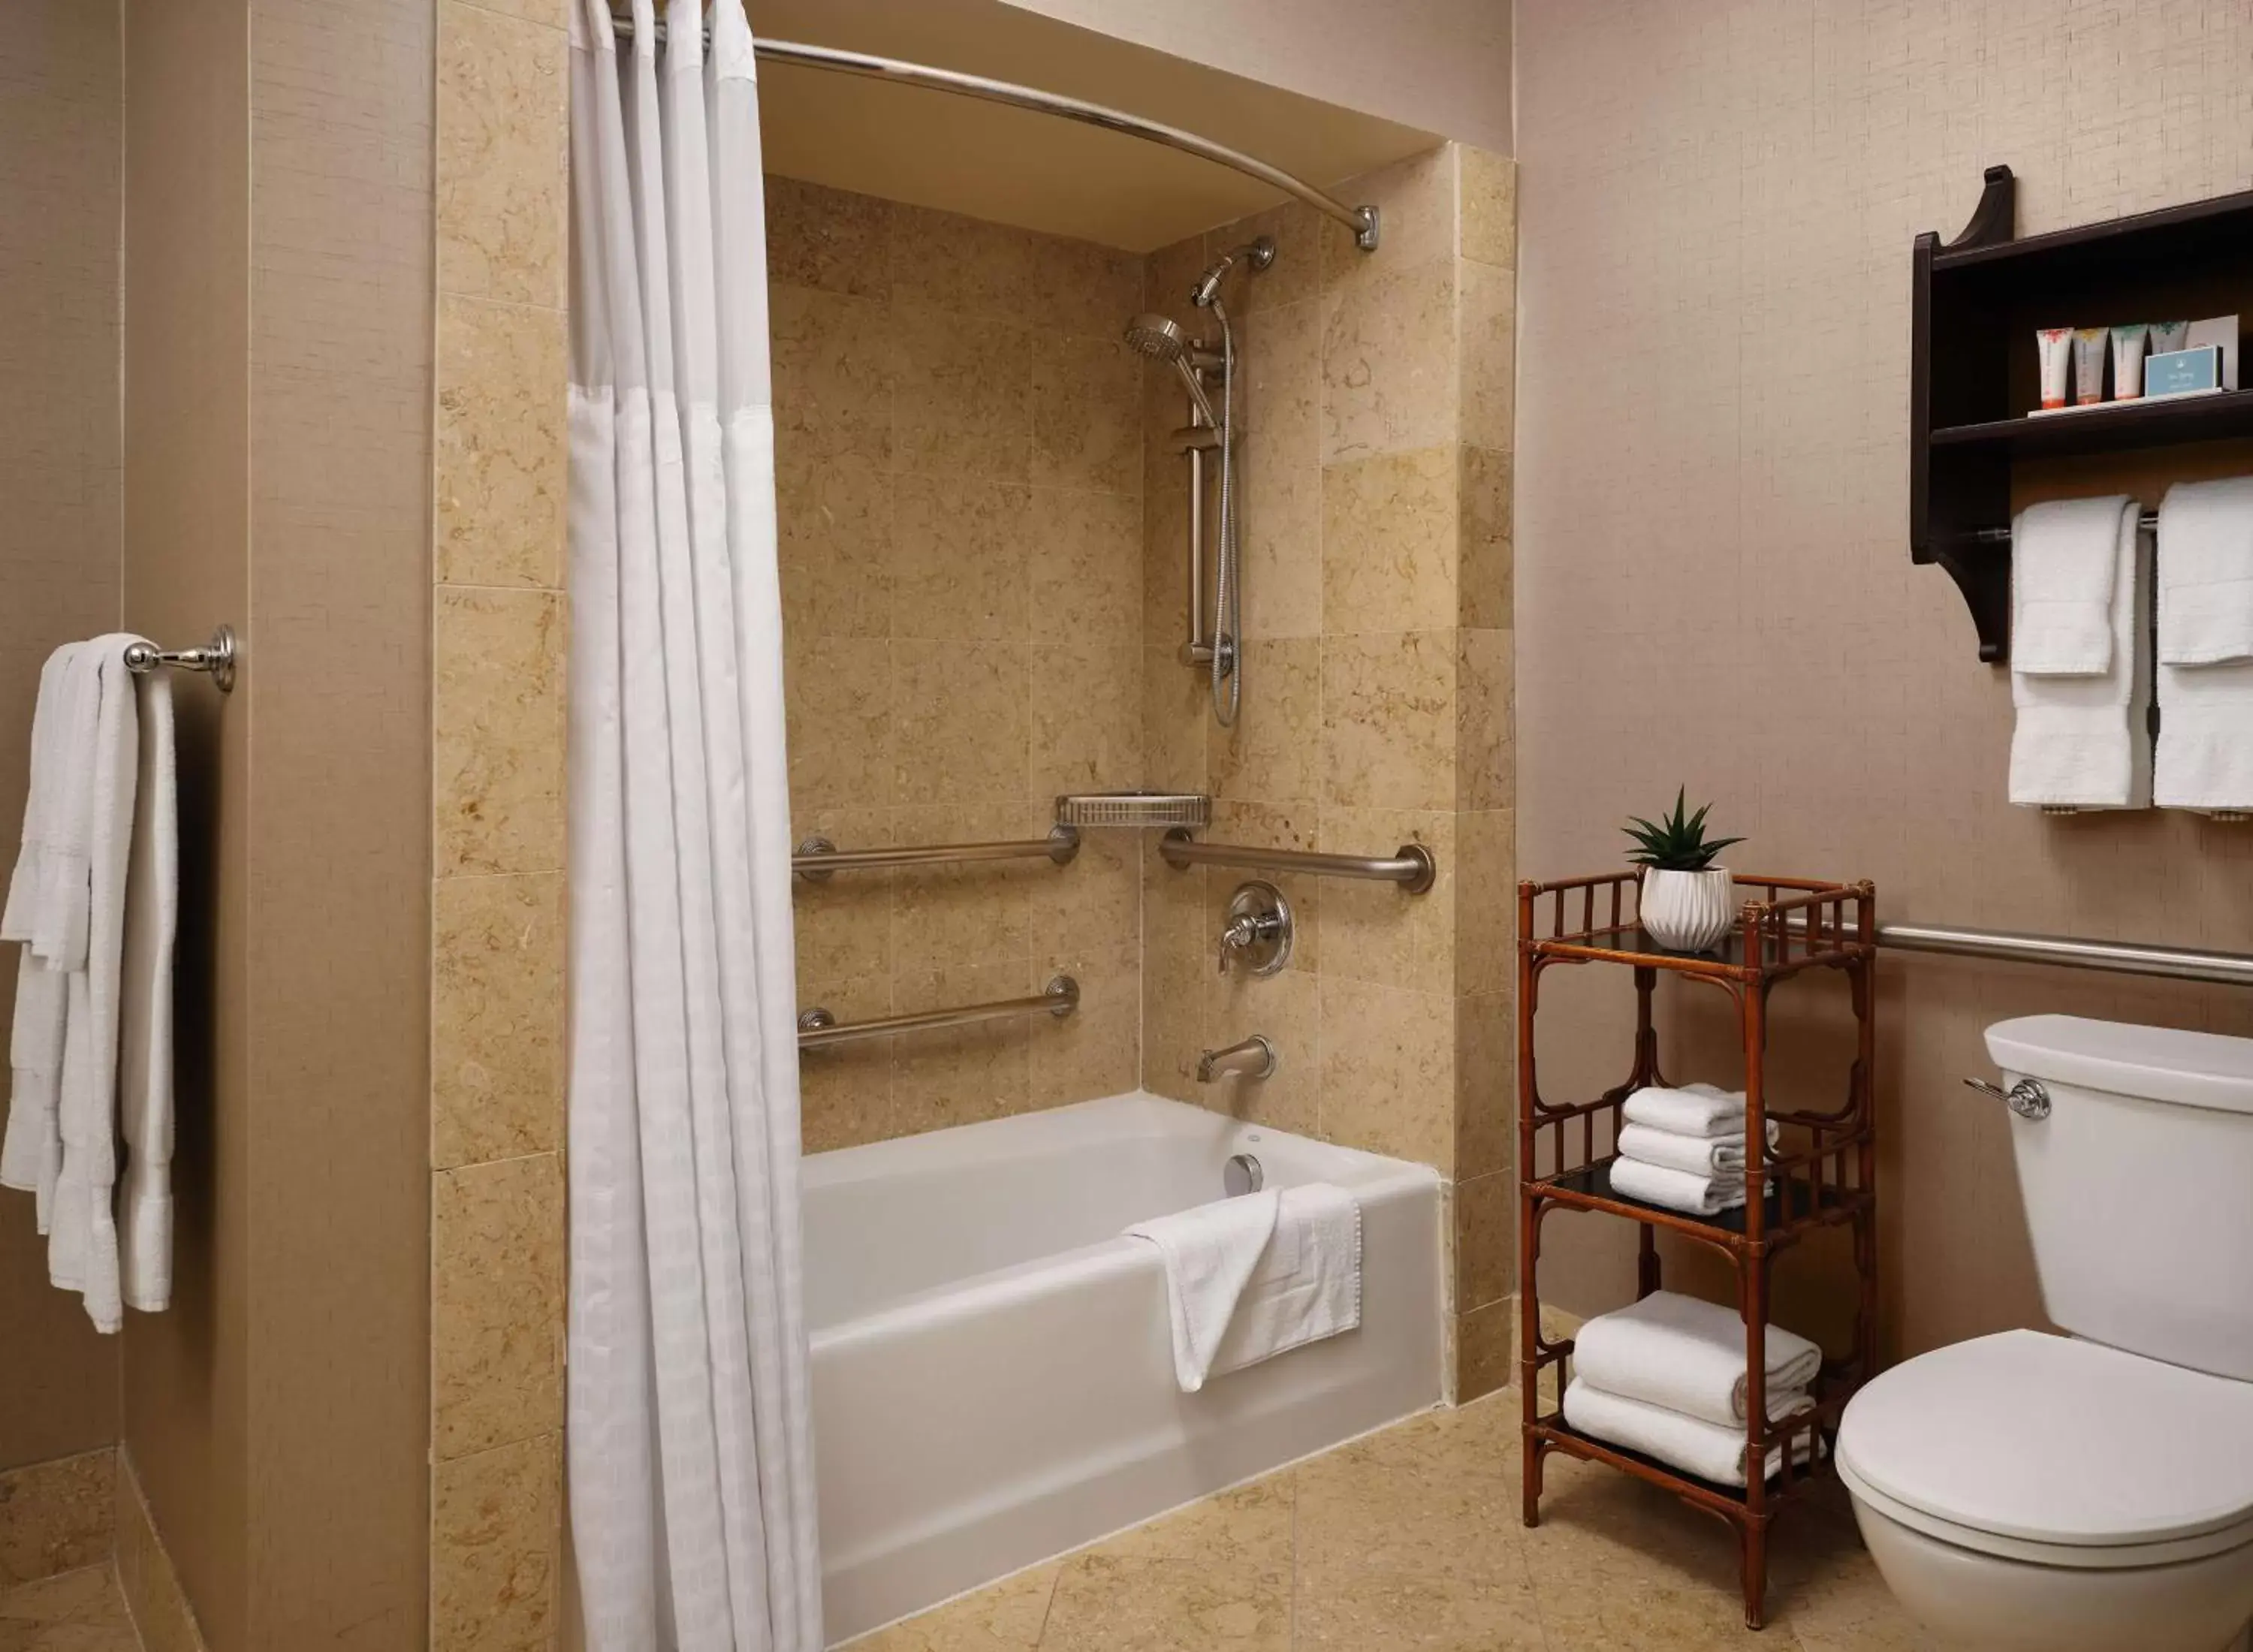 Bathroom in Hotel del Coronado, Curio Collection by Hilton